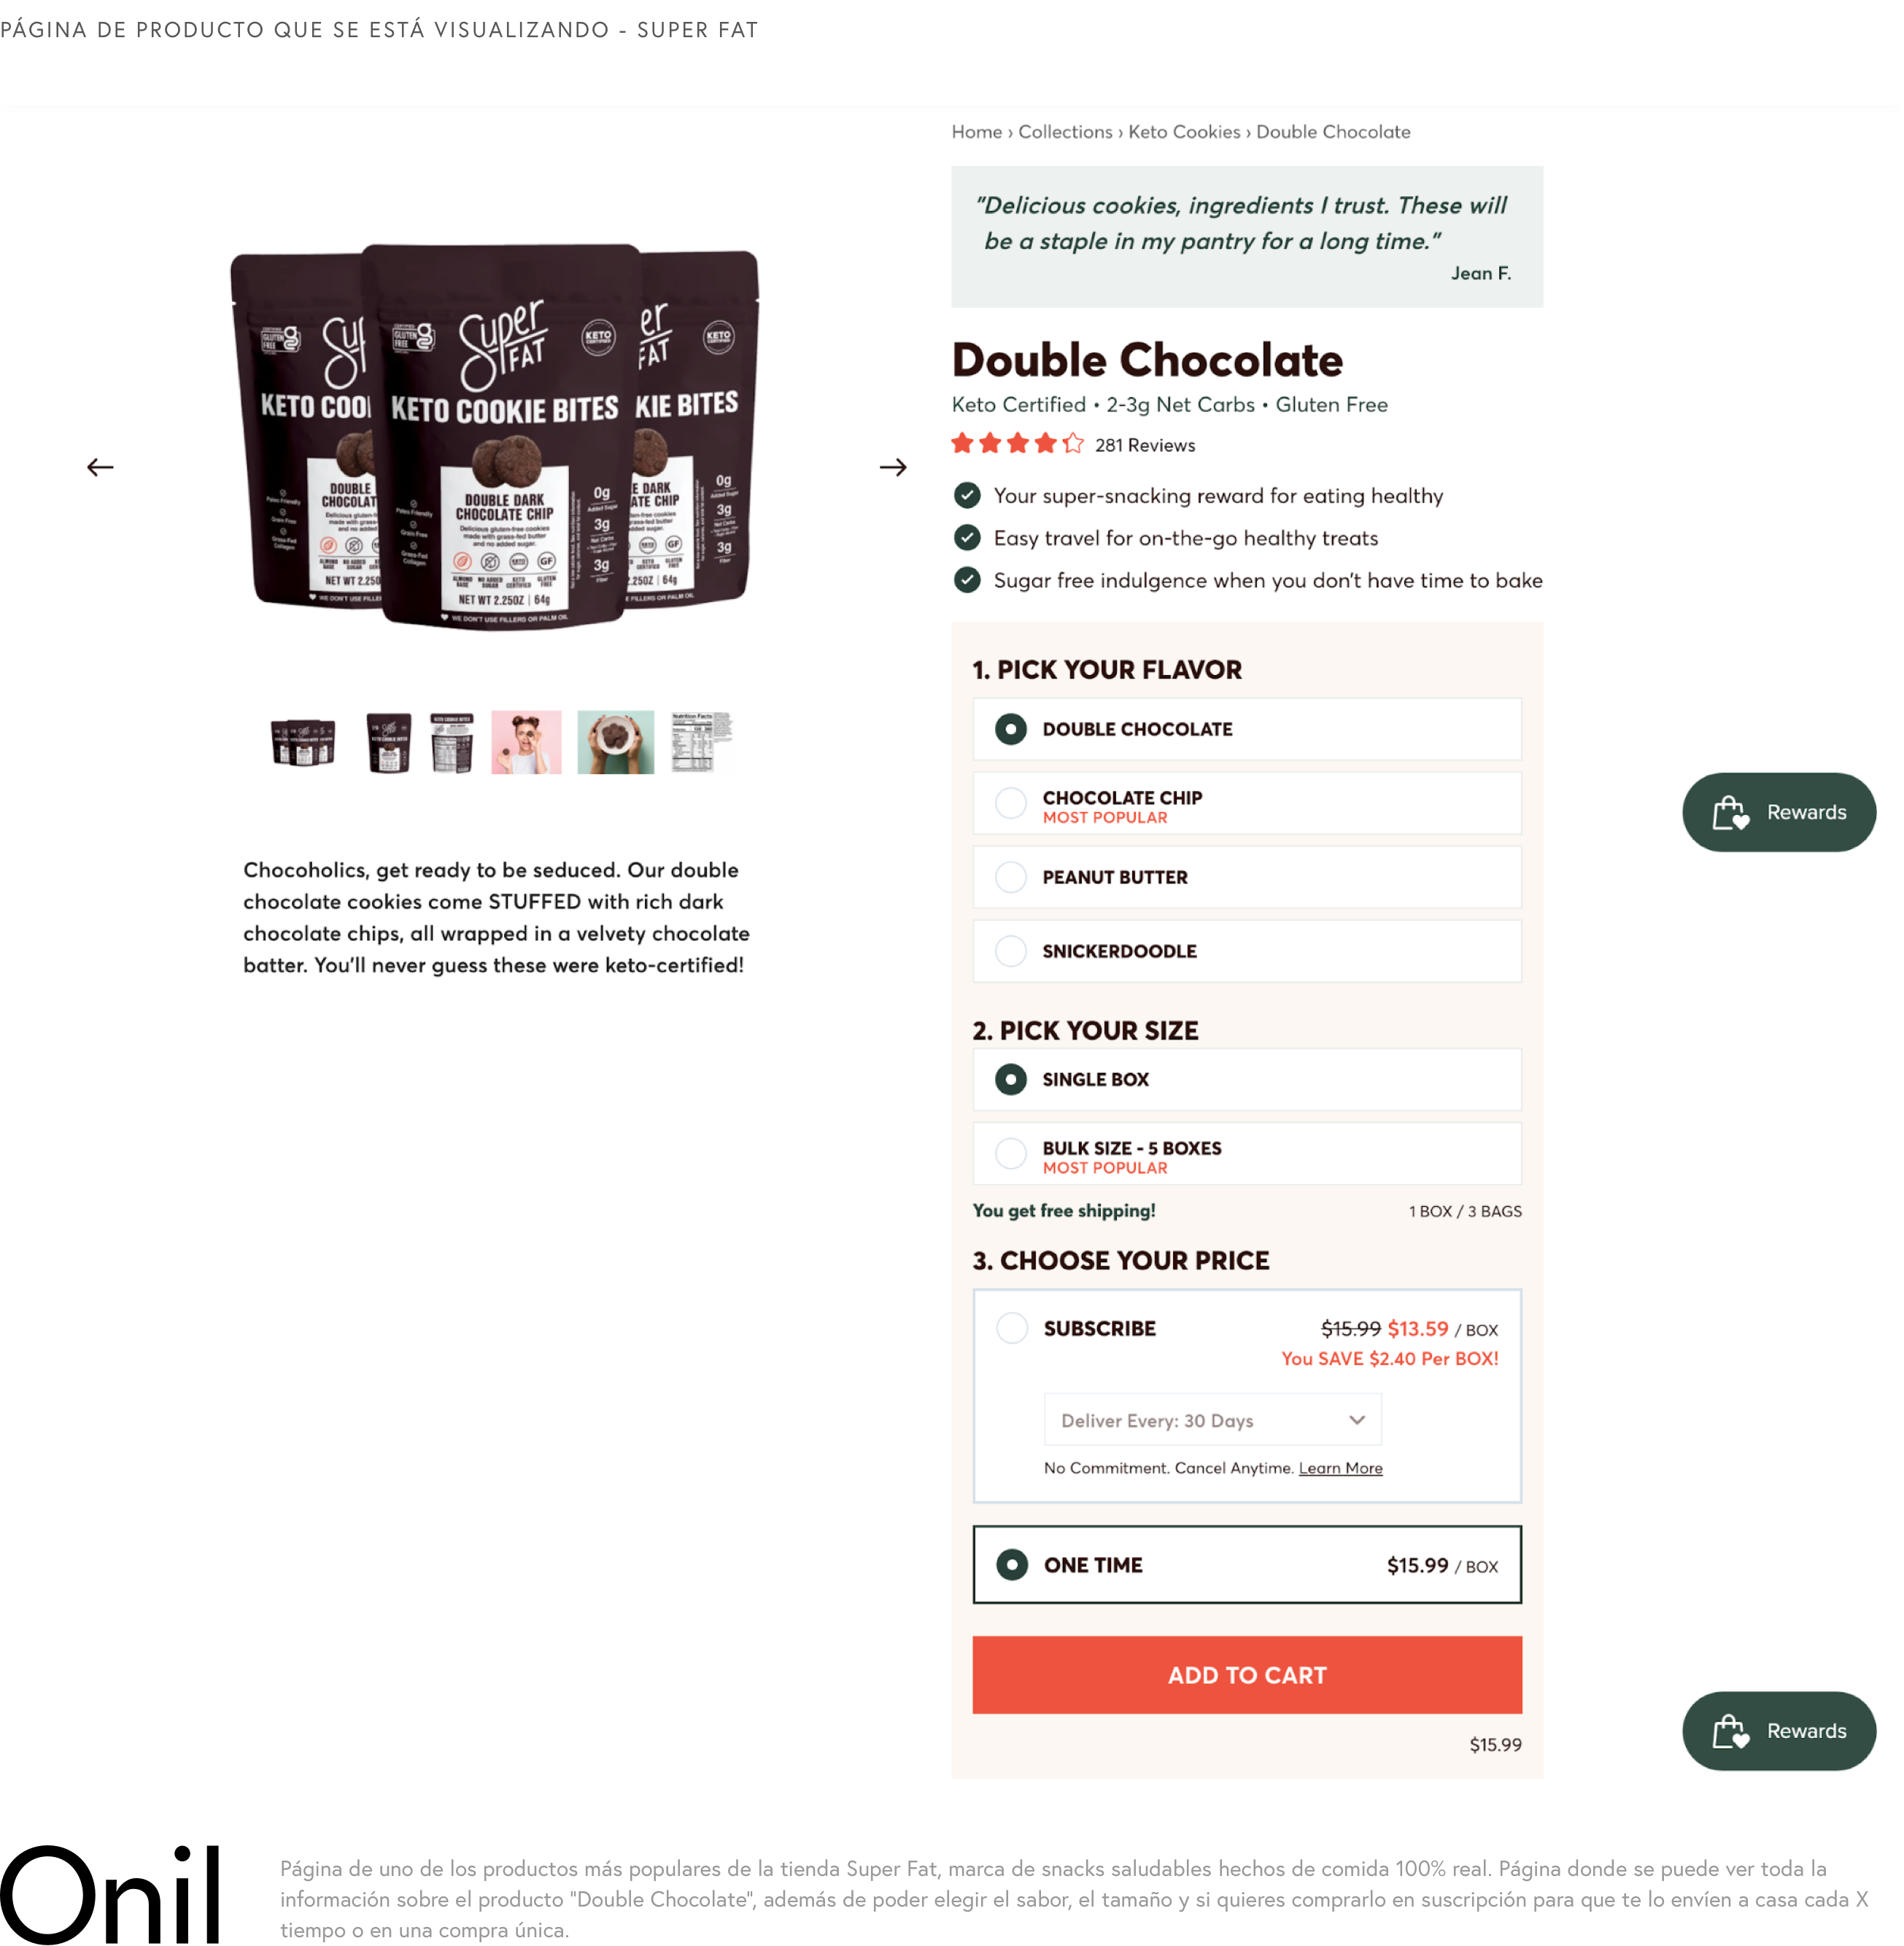 Página de producto que se está visualizando - se puede ver toda la información sobre el producto “Double Chocolate”, además de poder elegir el sabor, el tamaño y cómo quieres comprarlo.